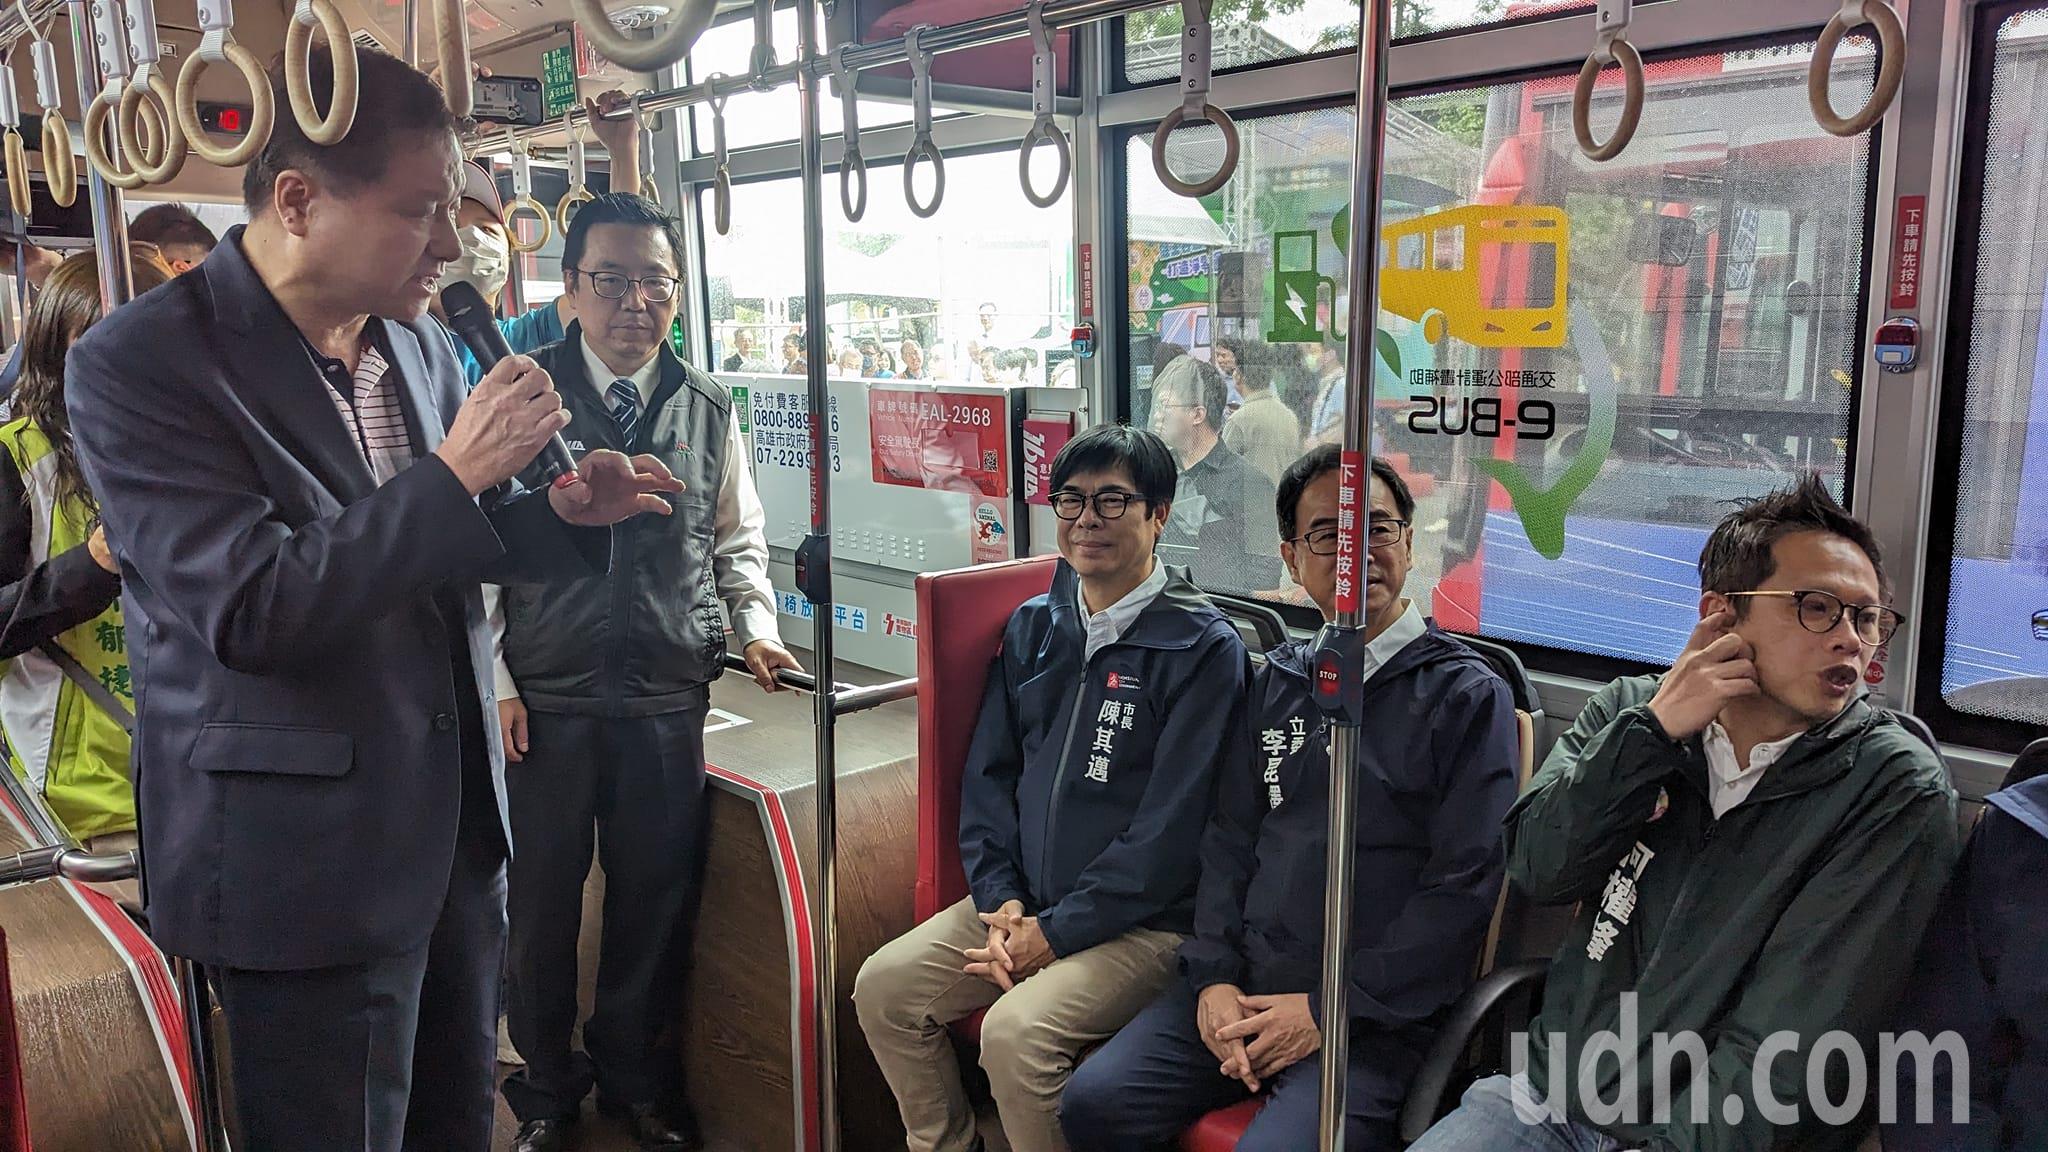 高雄市长陈其迈（坐左1）试乘电动公车。记者潘奕言／摄影